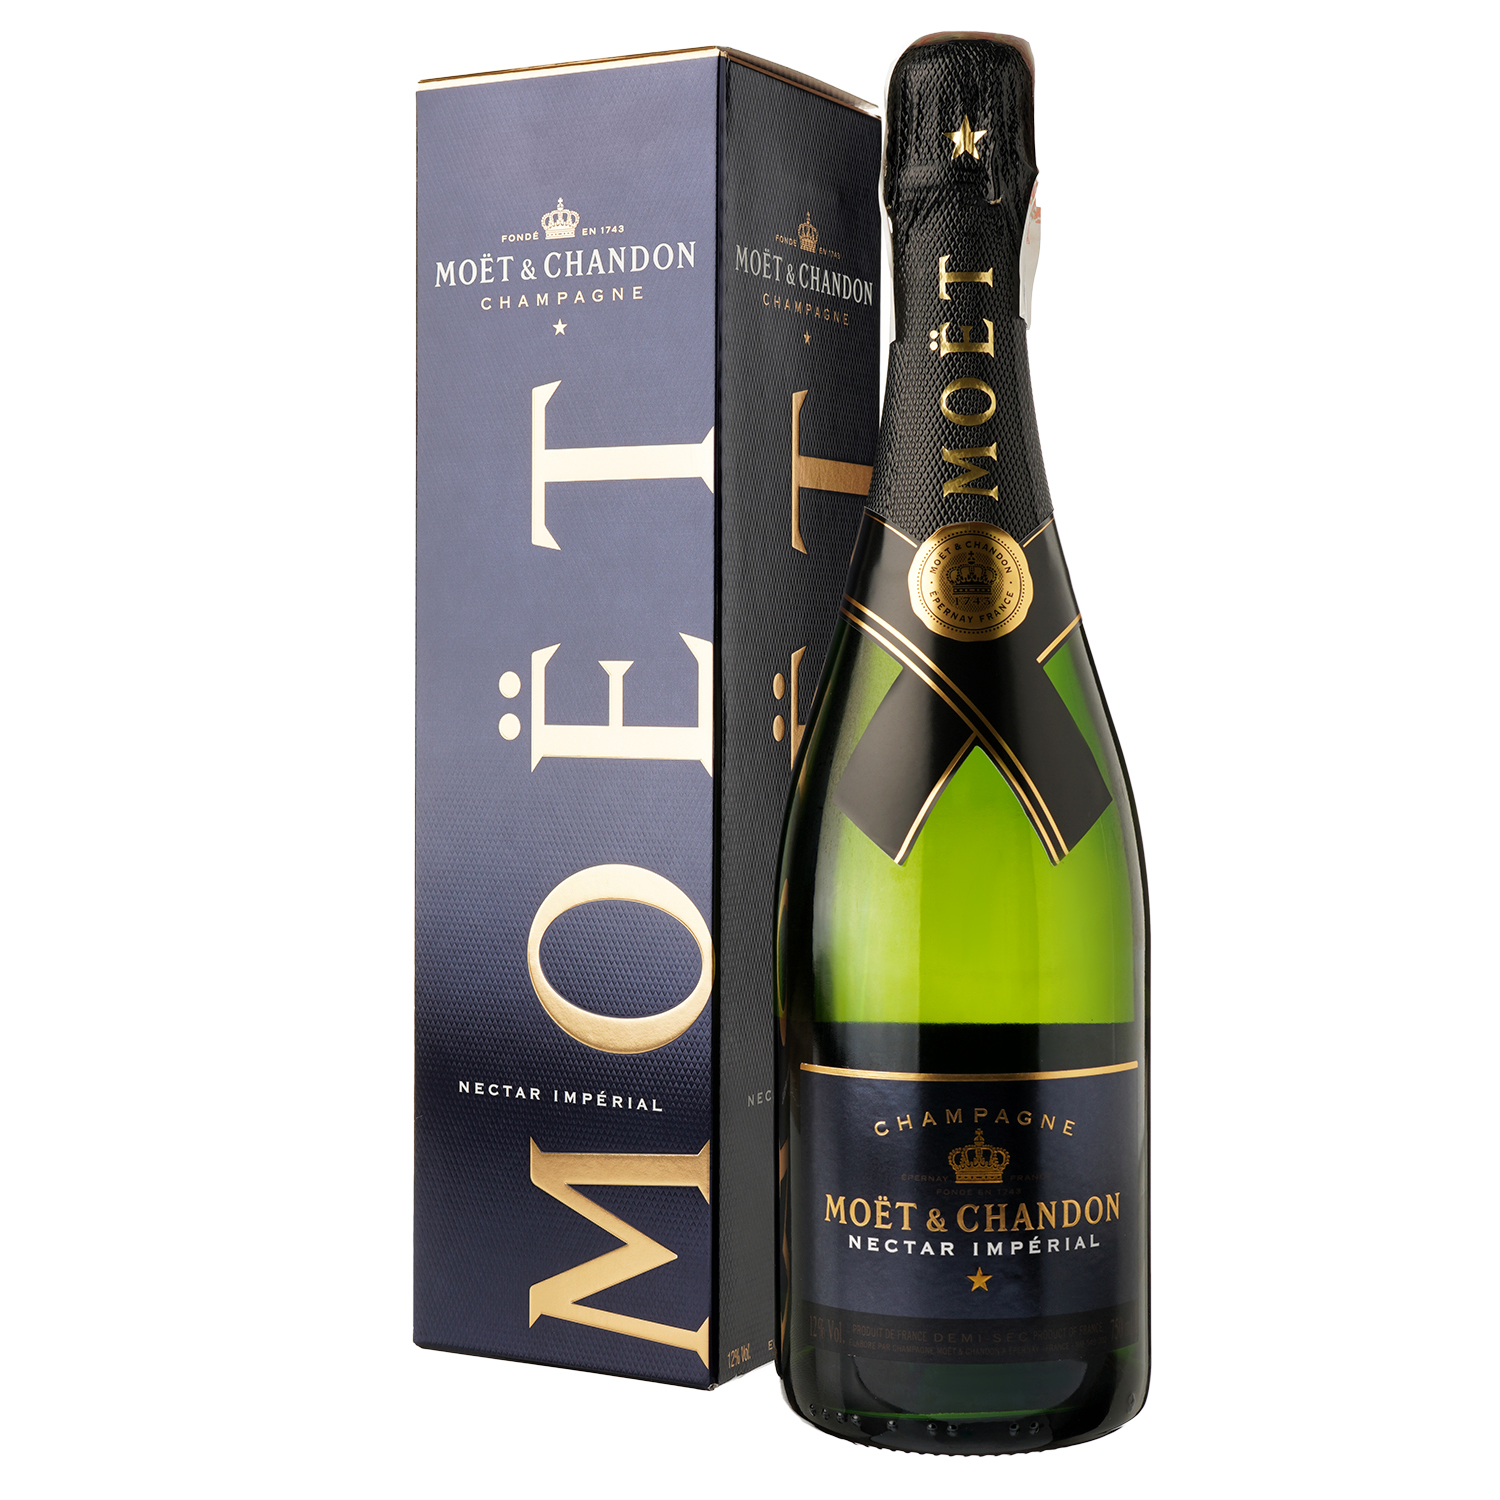 Шампанське Moet&Chandon Nectar Imperial, біле, напівсухе, AOP, 12%, 0,75 л (81162) - фото 1